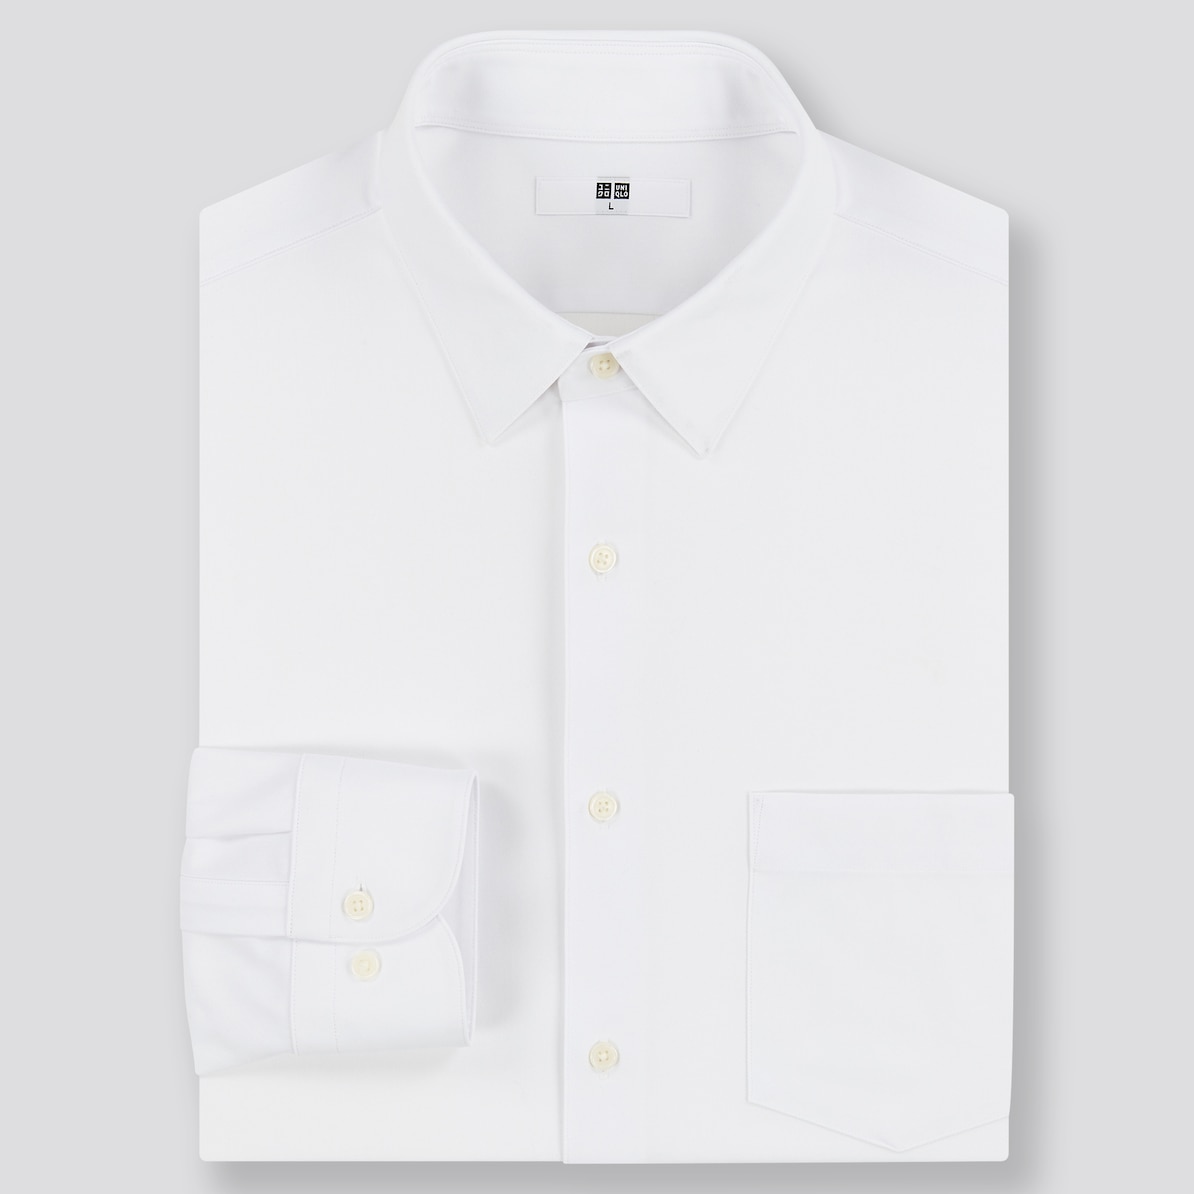 ワイシャツ通販で失敗しない おすすめ店17選とサイズ選びのコツを紹介します 紳士のシャツ